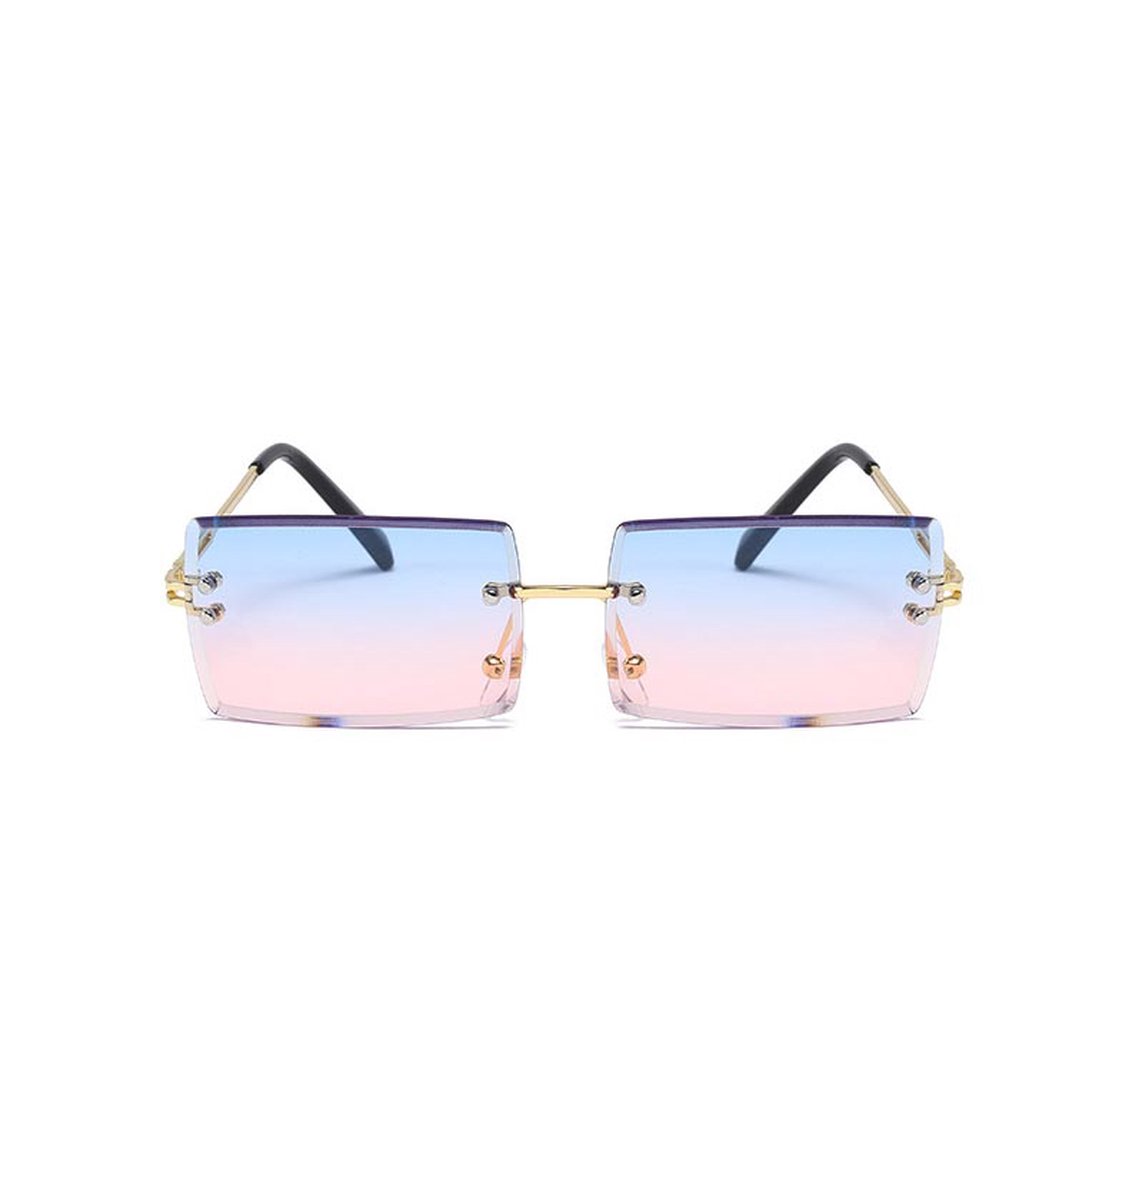 Freaky Glasses - Zonnebril rechthoekig - Festivalbril - Bril - Feest - Glasses - Heren - Dames - Unisex - Kunststof - blauw